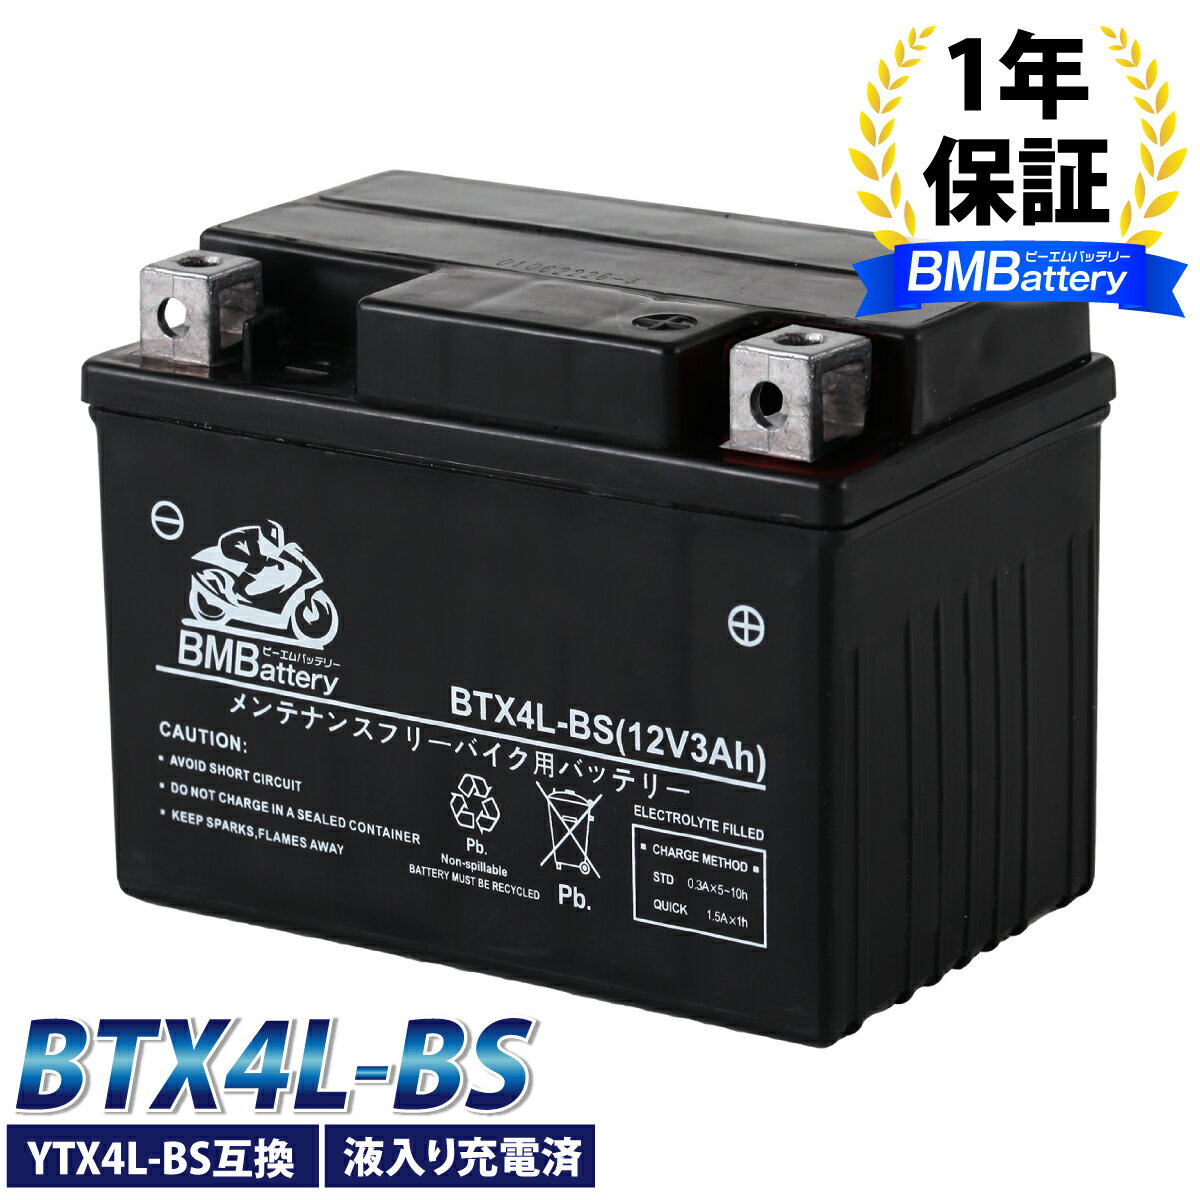 バイク バッテリー YTX4L-BS 互換【BTX4L-BS】BM Battery 充電・液注入済み( YT4L-BS FT4L-BS CTX4L-BS CT4L-BS ) 1…